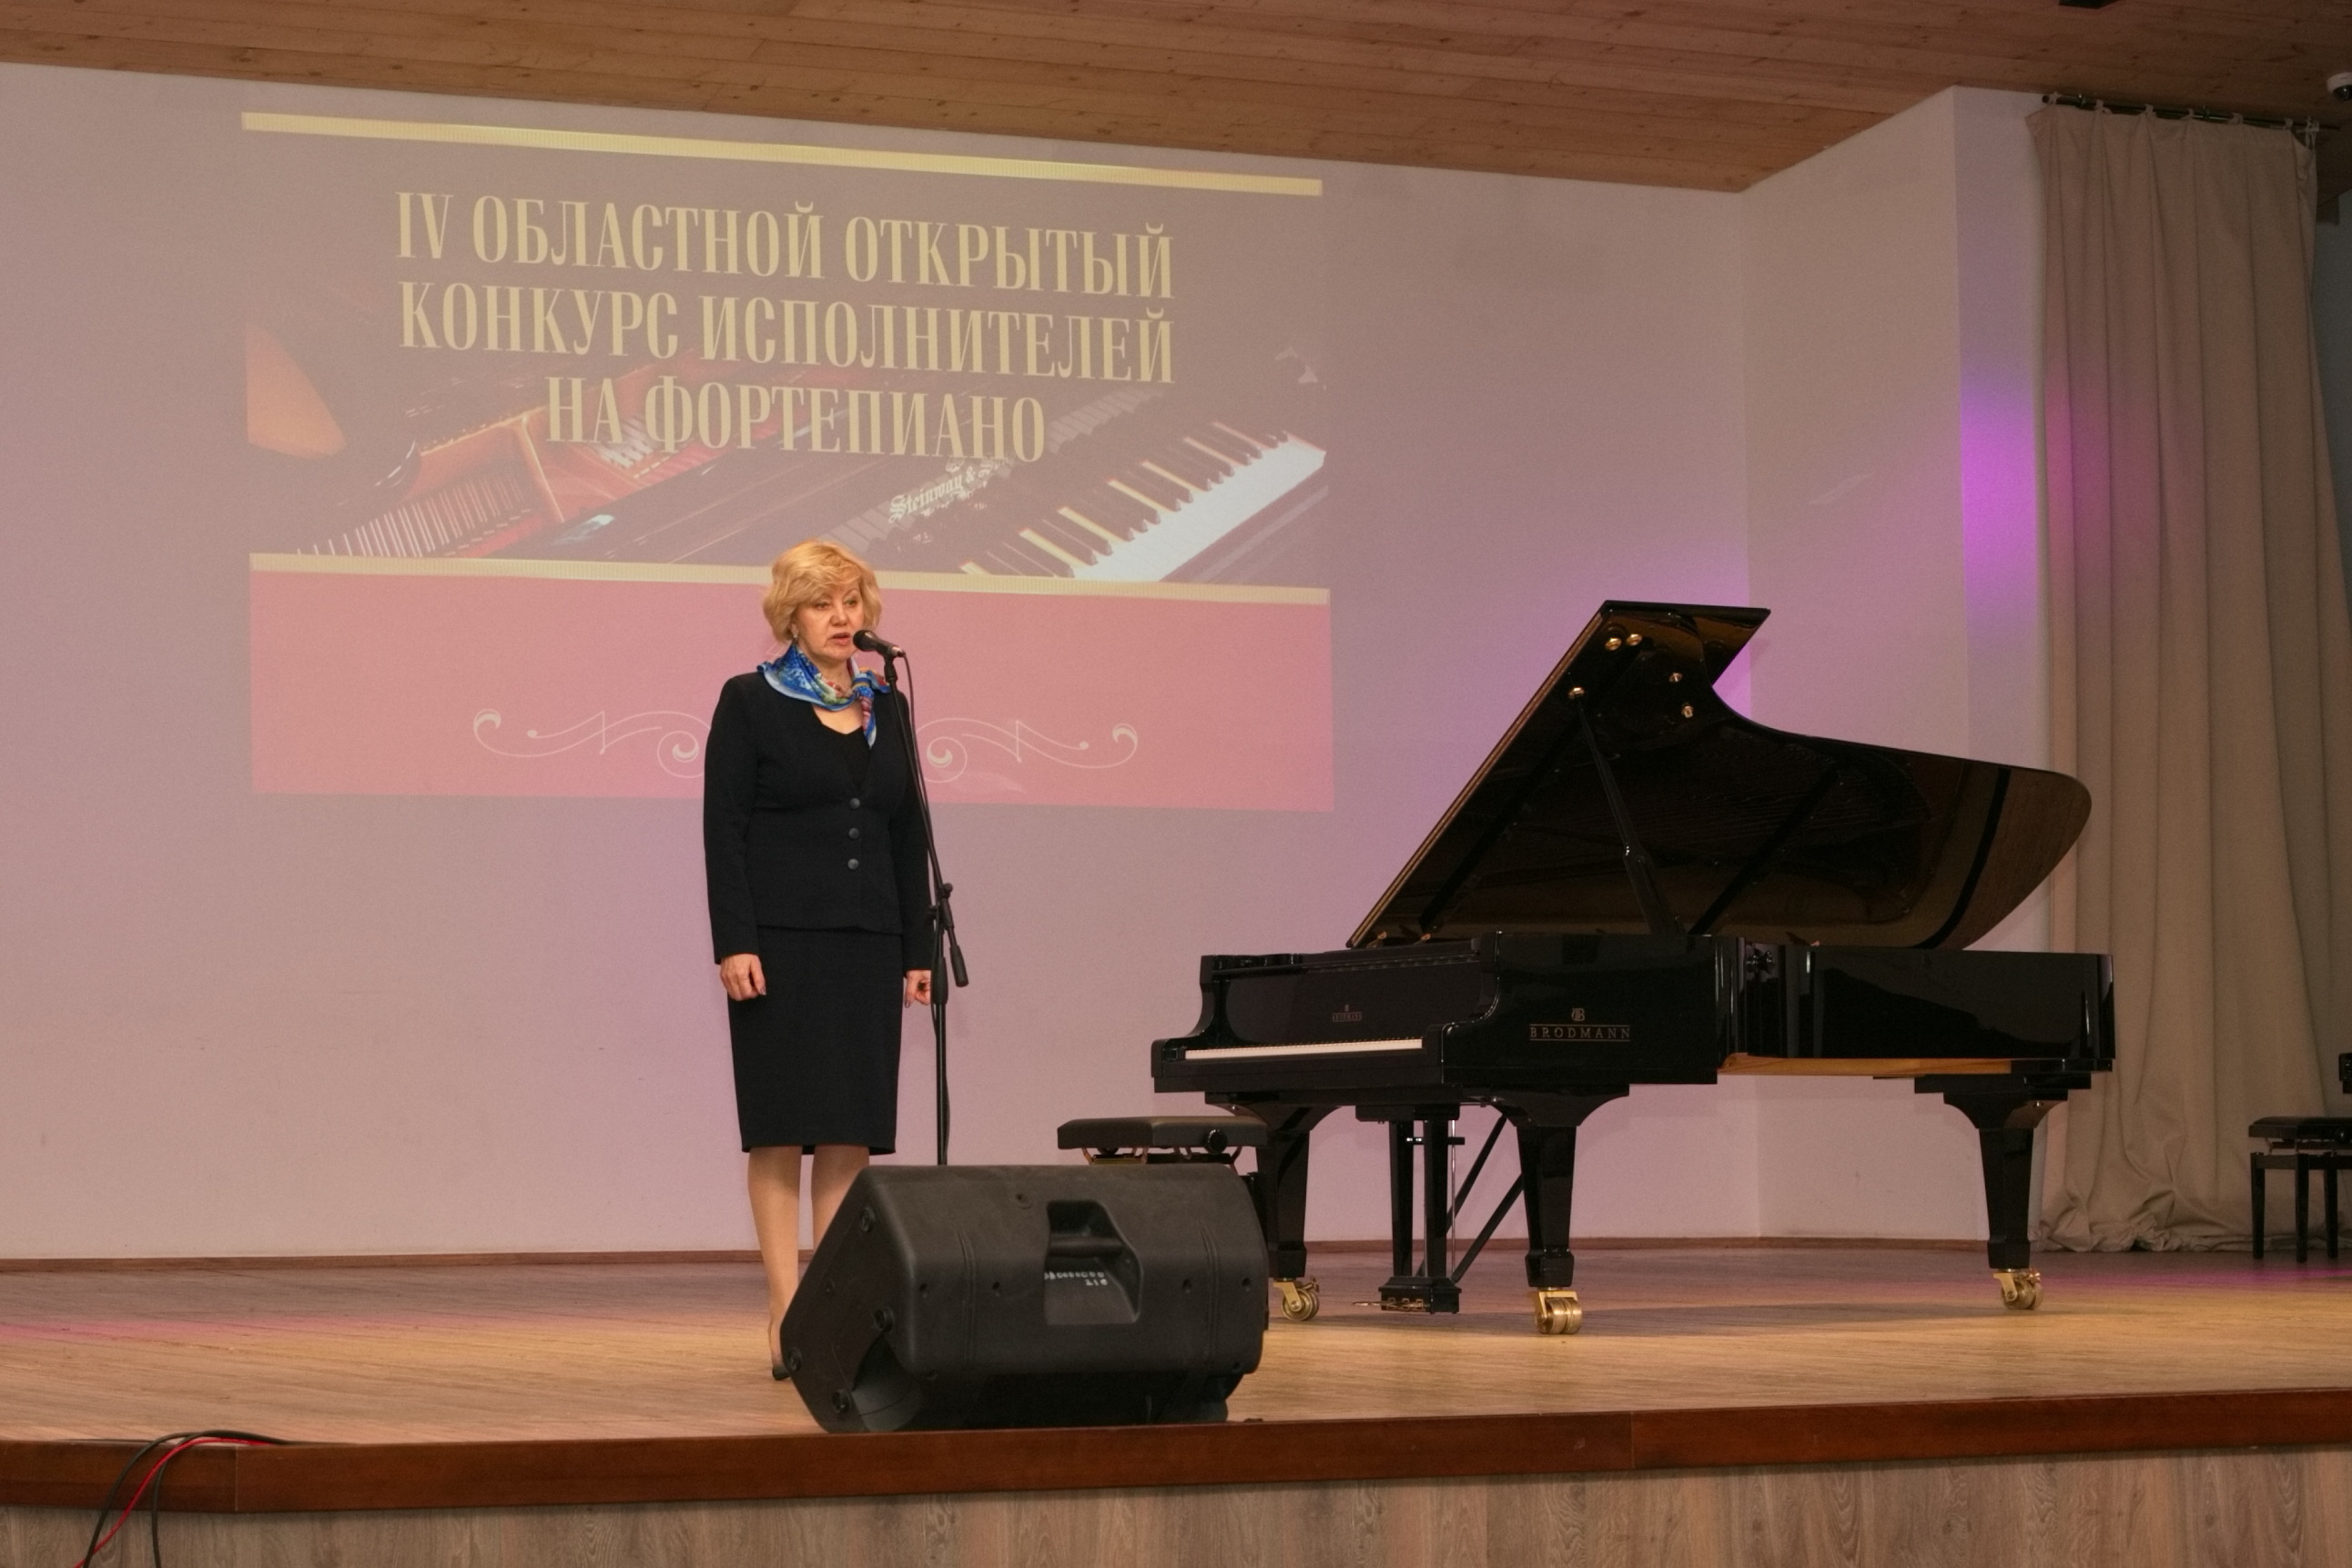 Прошедший музыкальный конкурс в Костроме. Результаты конкурса фортепиано